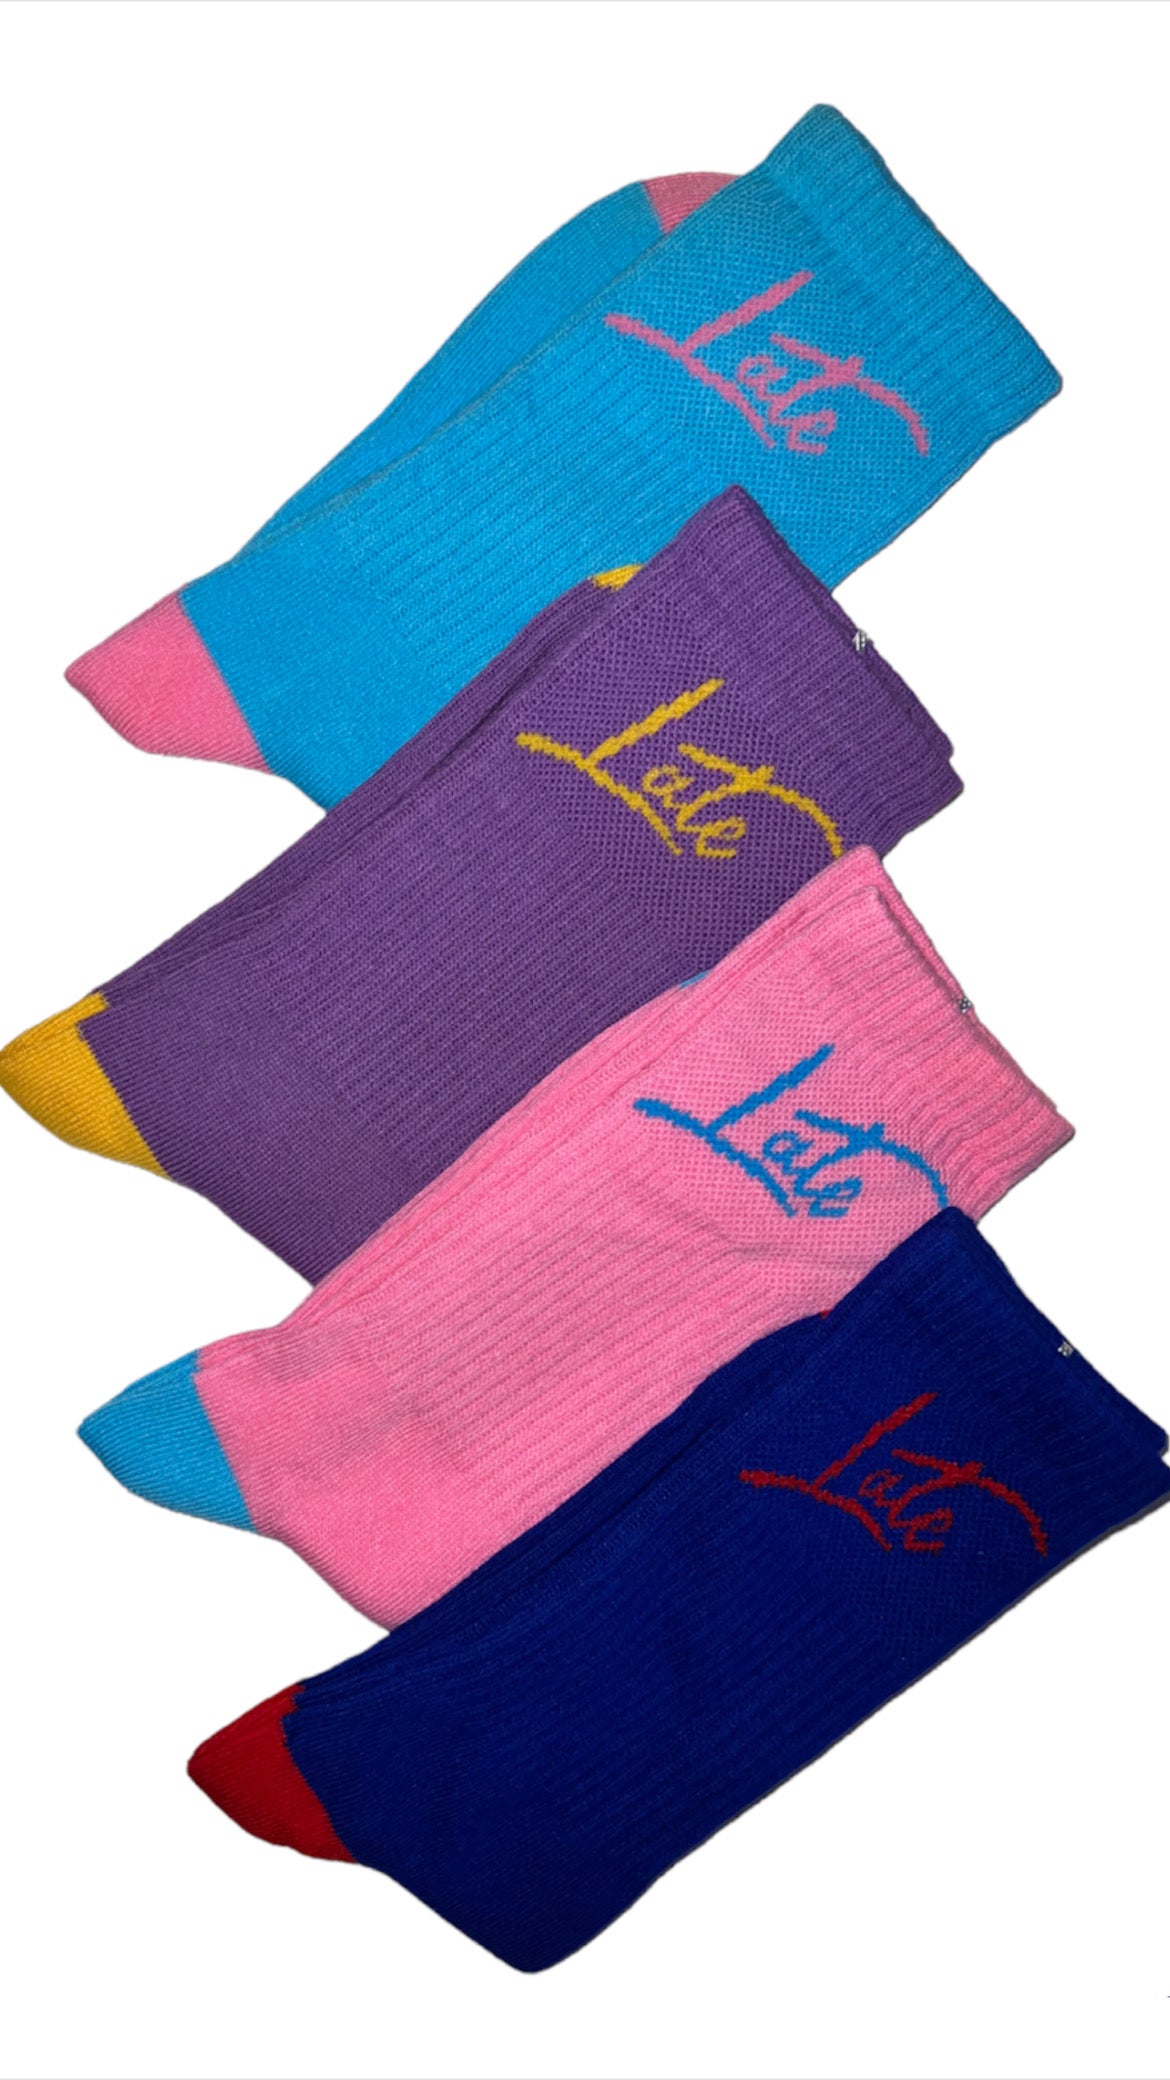 Cotton Candy Blue & Pink “LOGO” Patch Socks